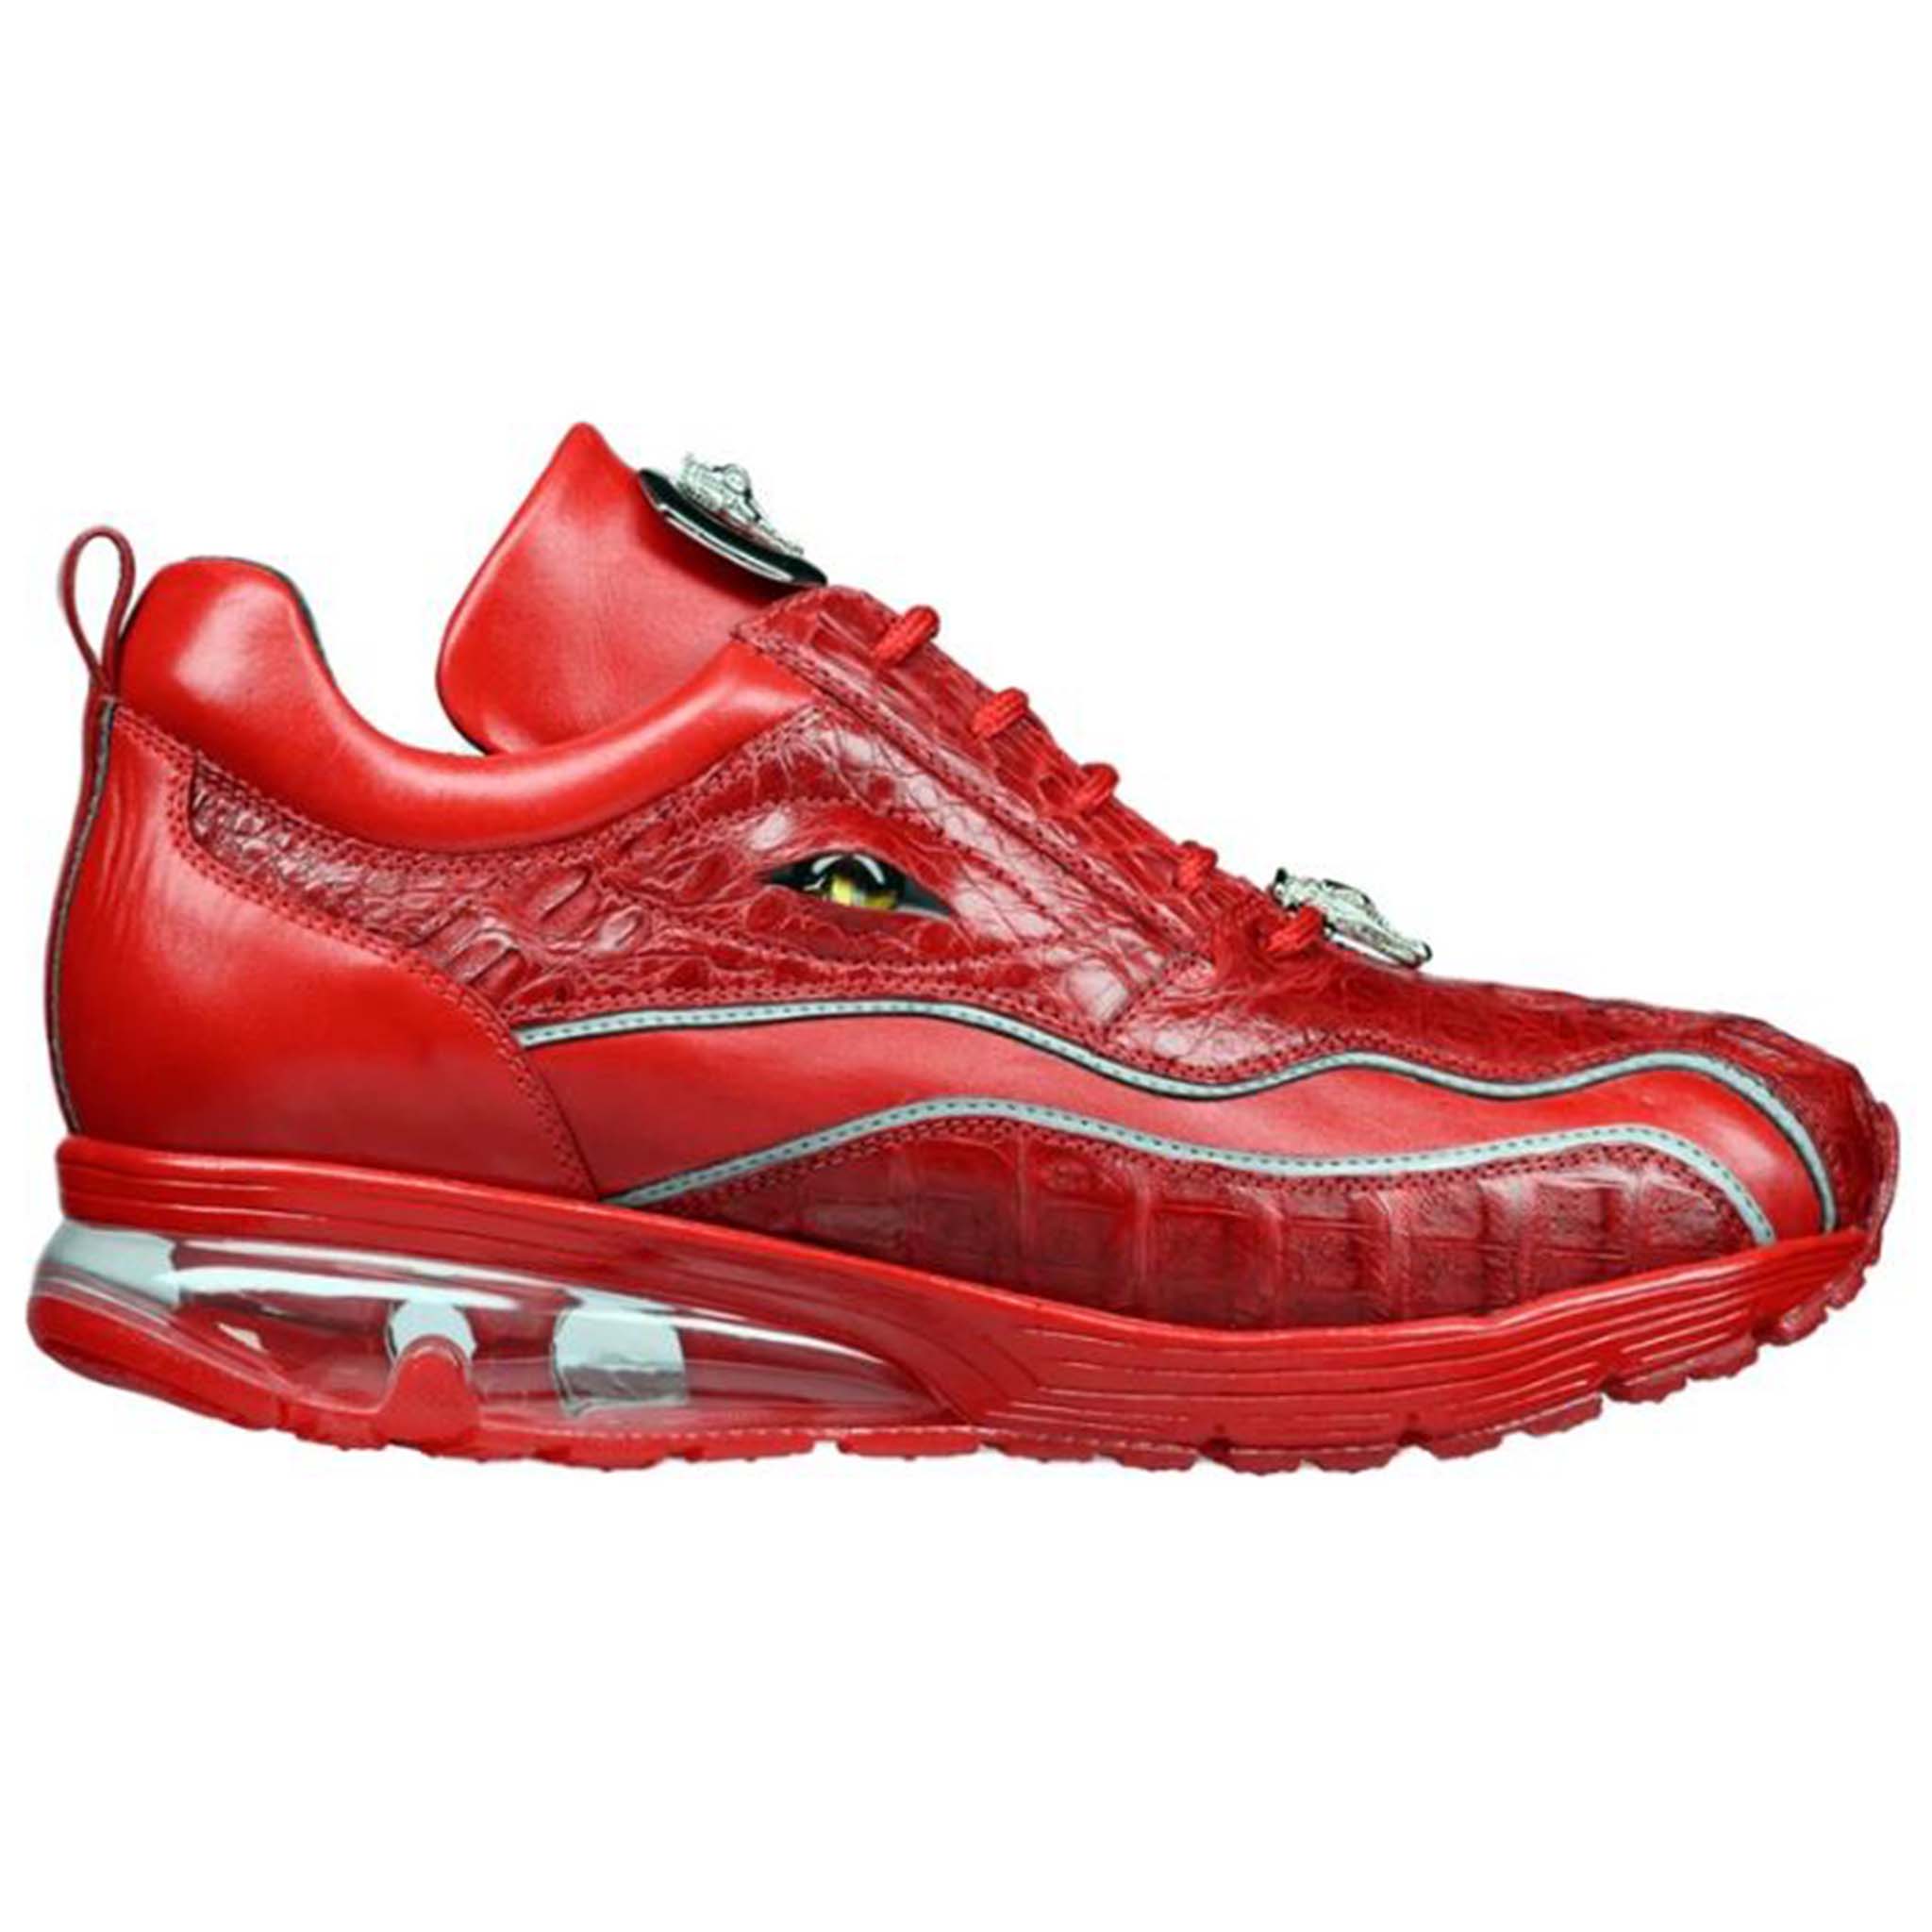 Belvedere Red Hornback Sneaker